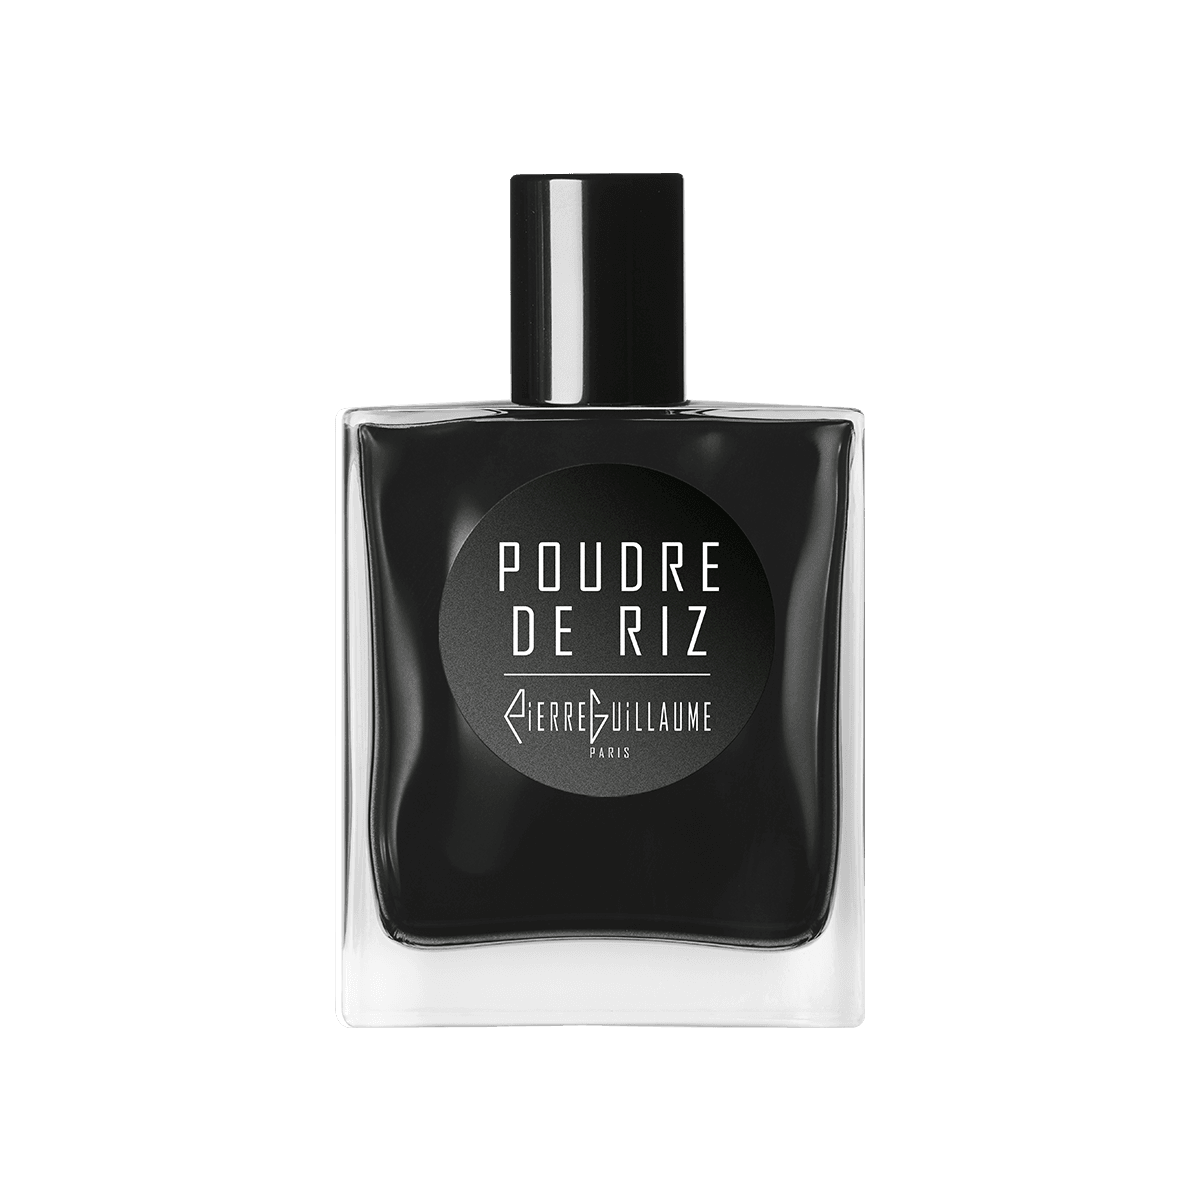 Pierre Guillaume Noire - Poudre de Riz 50 ml | Perfume Lounge